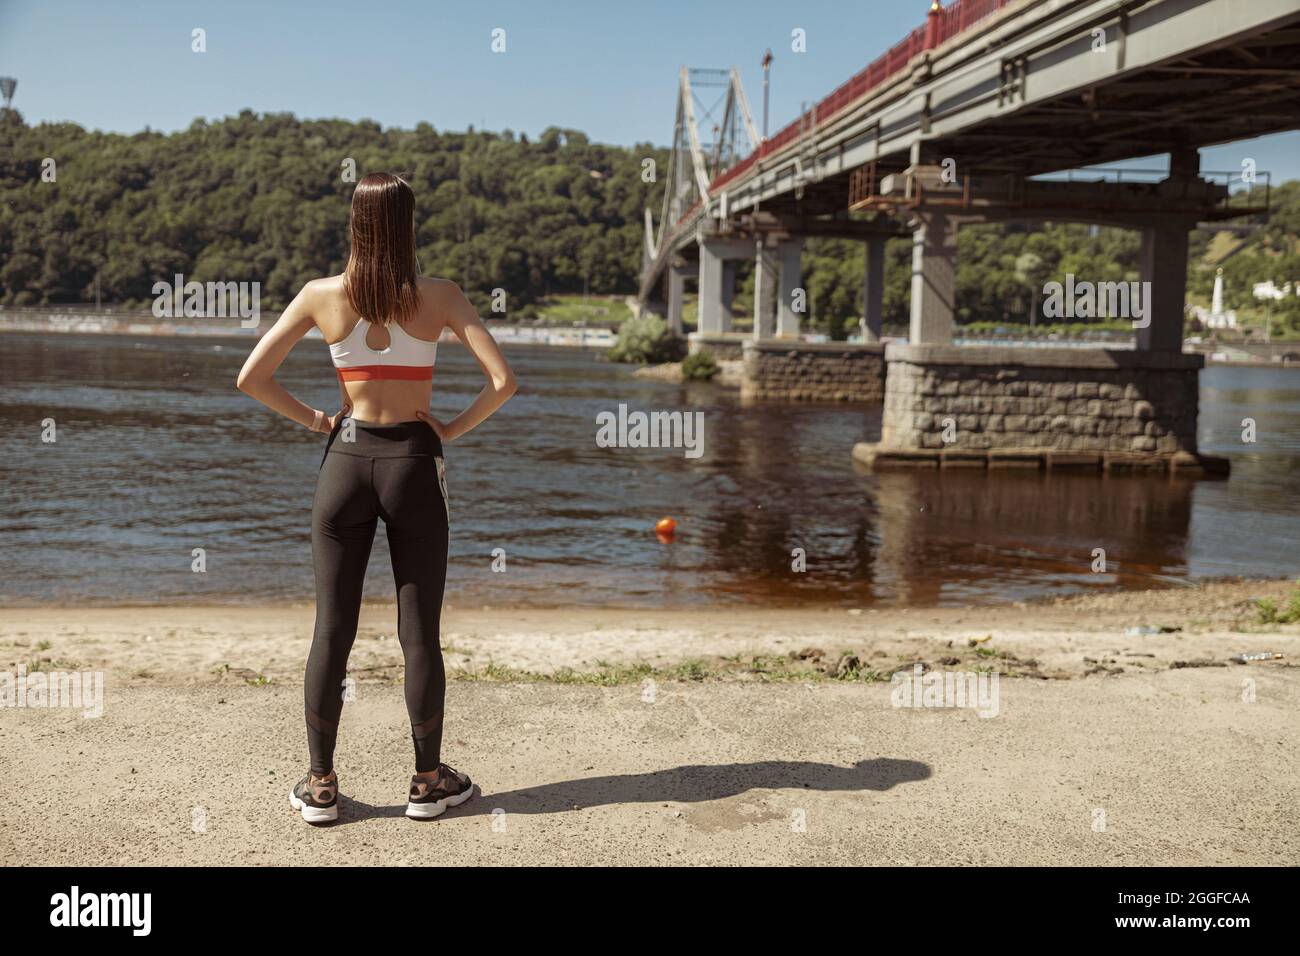 Frau in Sportkleidung blickt auf den Fluss, der auf einer Sandbank steht Stockfoto